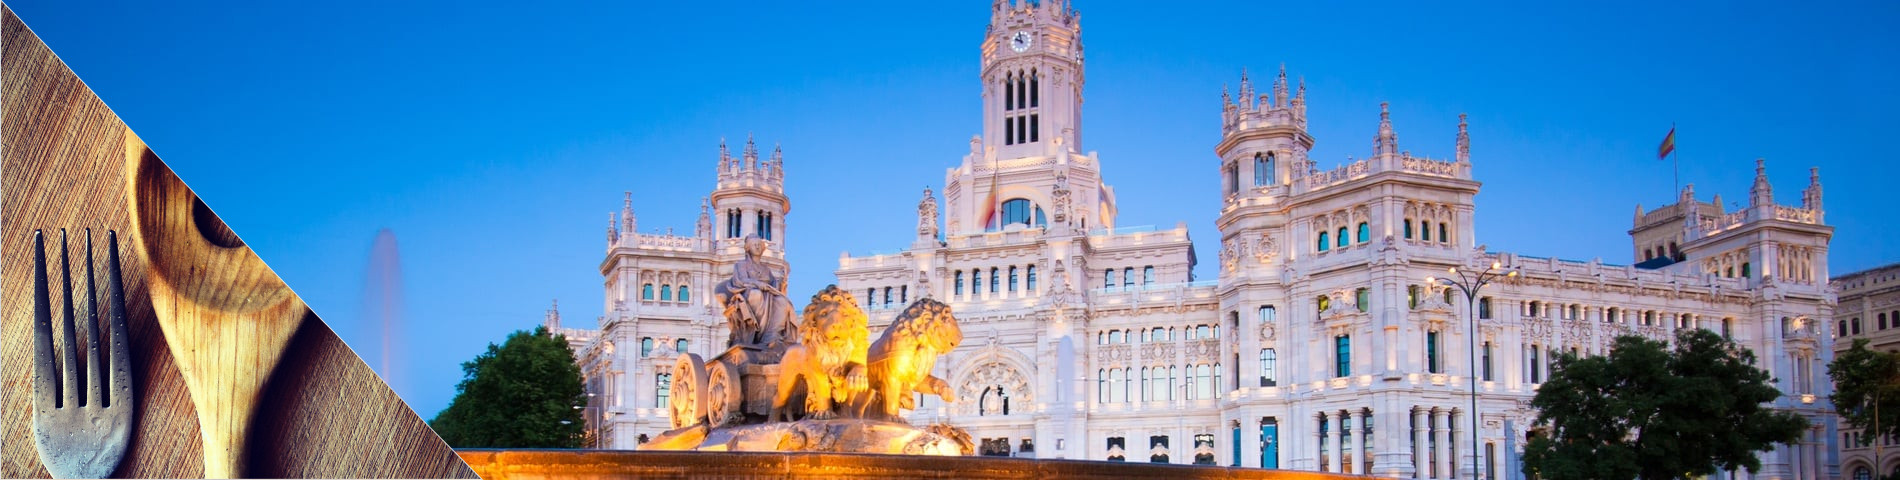 مدريد - تعلم اللغة والطبخ